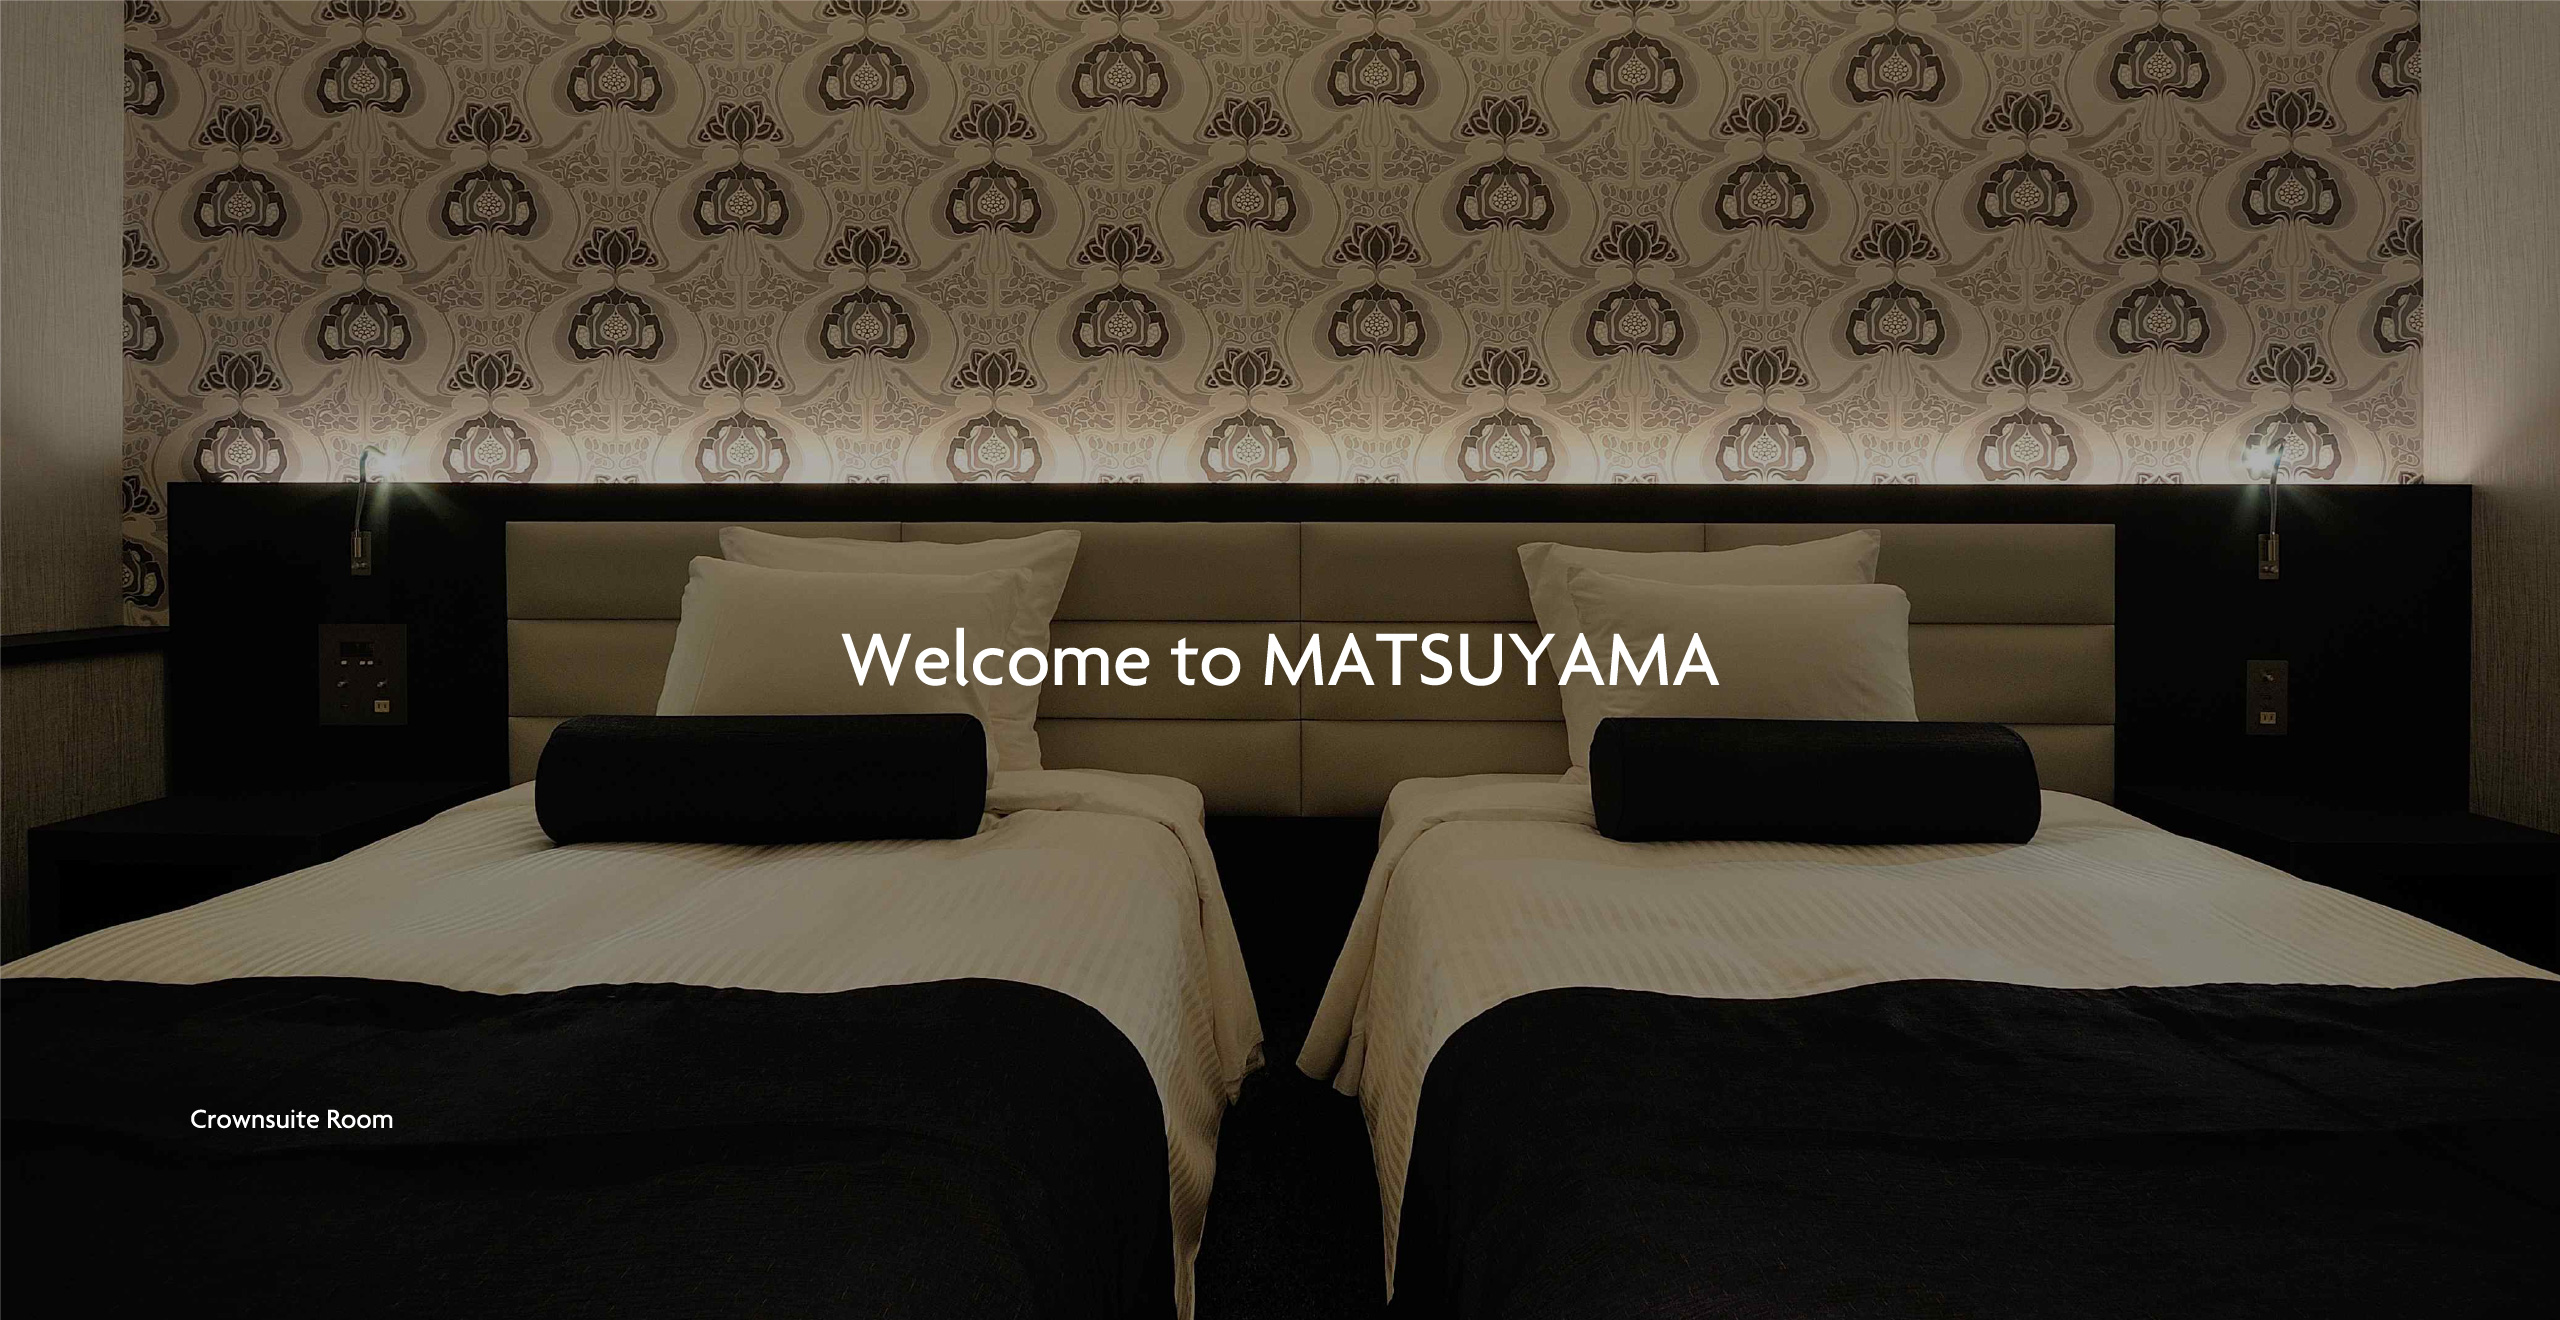 クラウンスイートルーム | Crownsuite Room | Welcome to MATSUYAMA